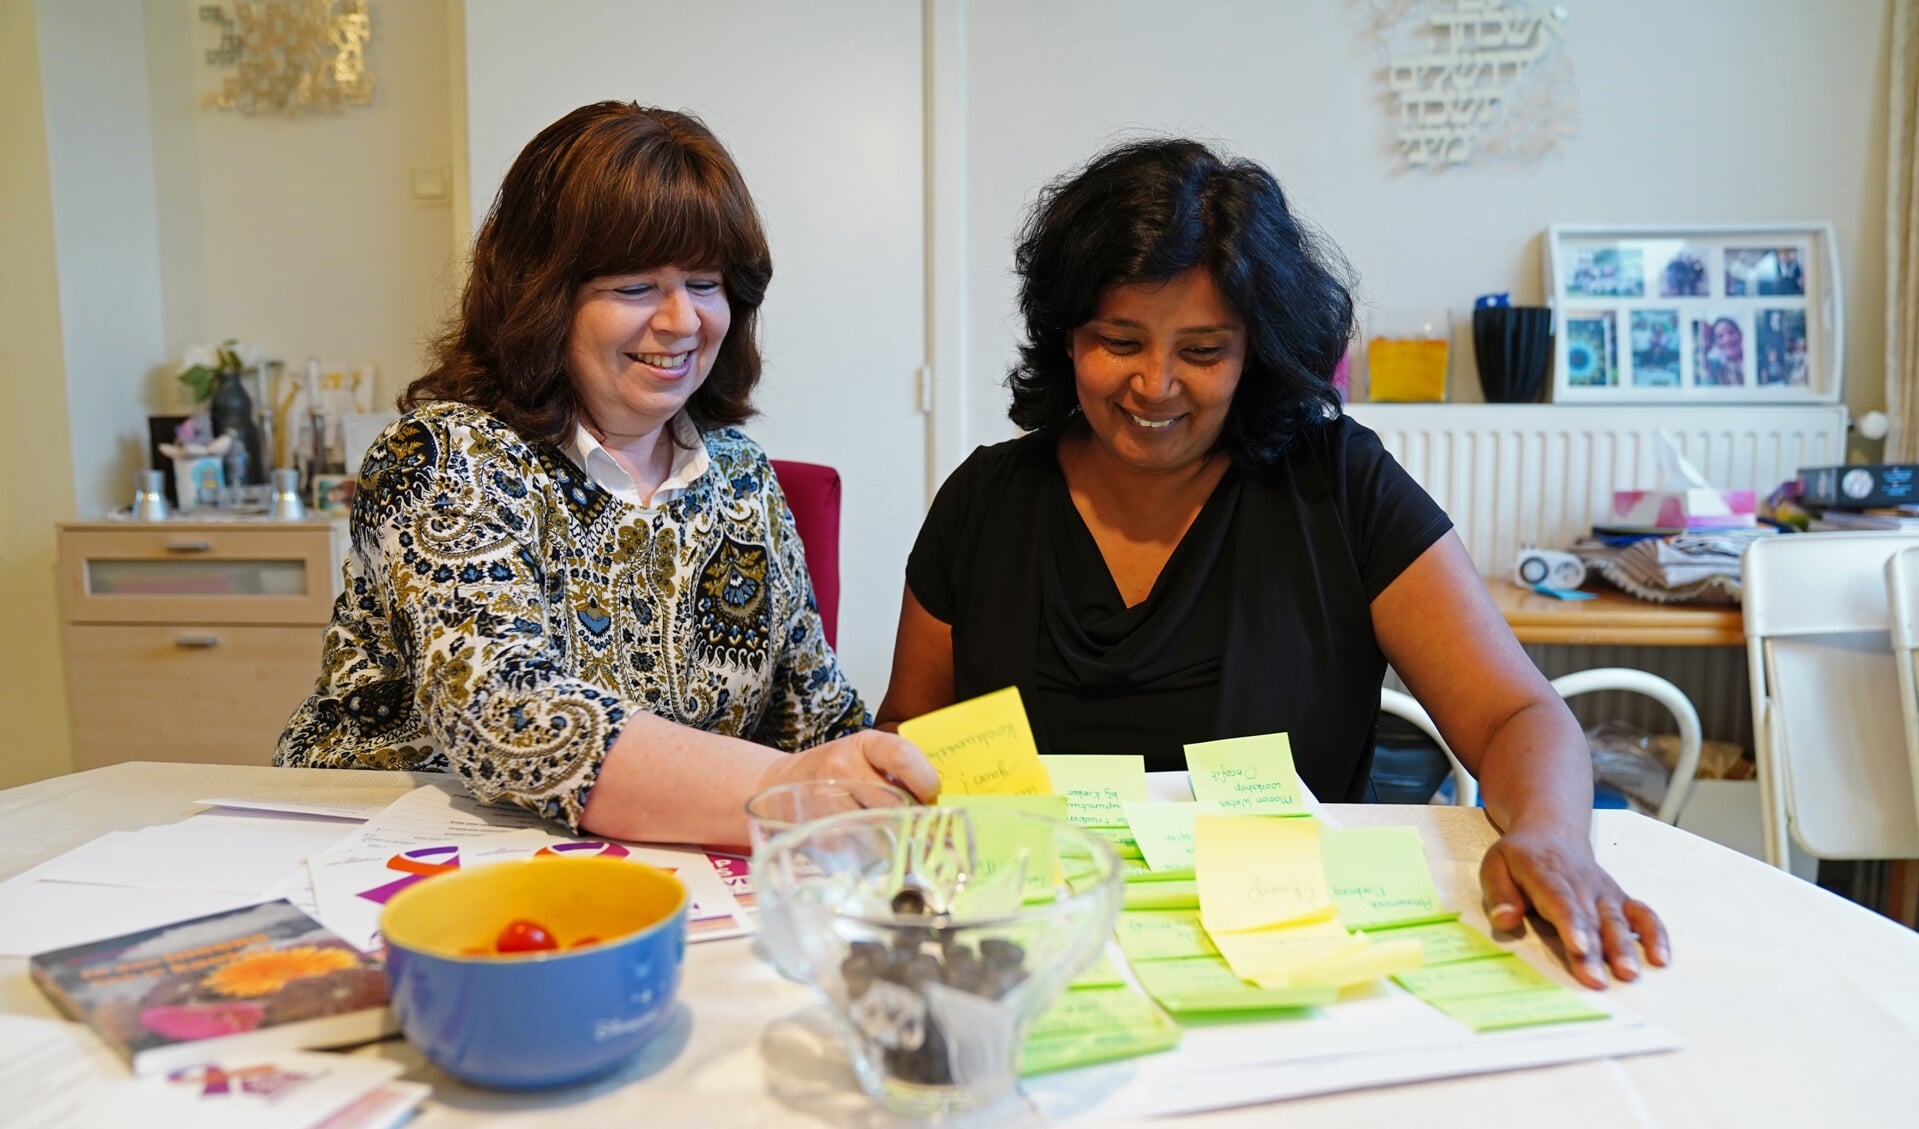 Shosha Lissauer (links) in 2019 met een van de vrijwilligers in Inloophuis Amstelveen.